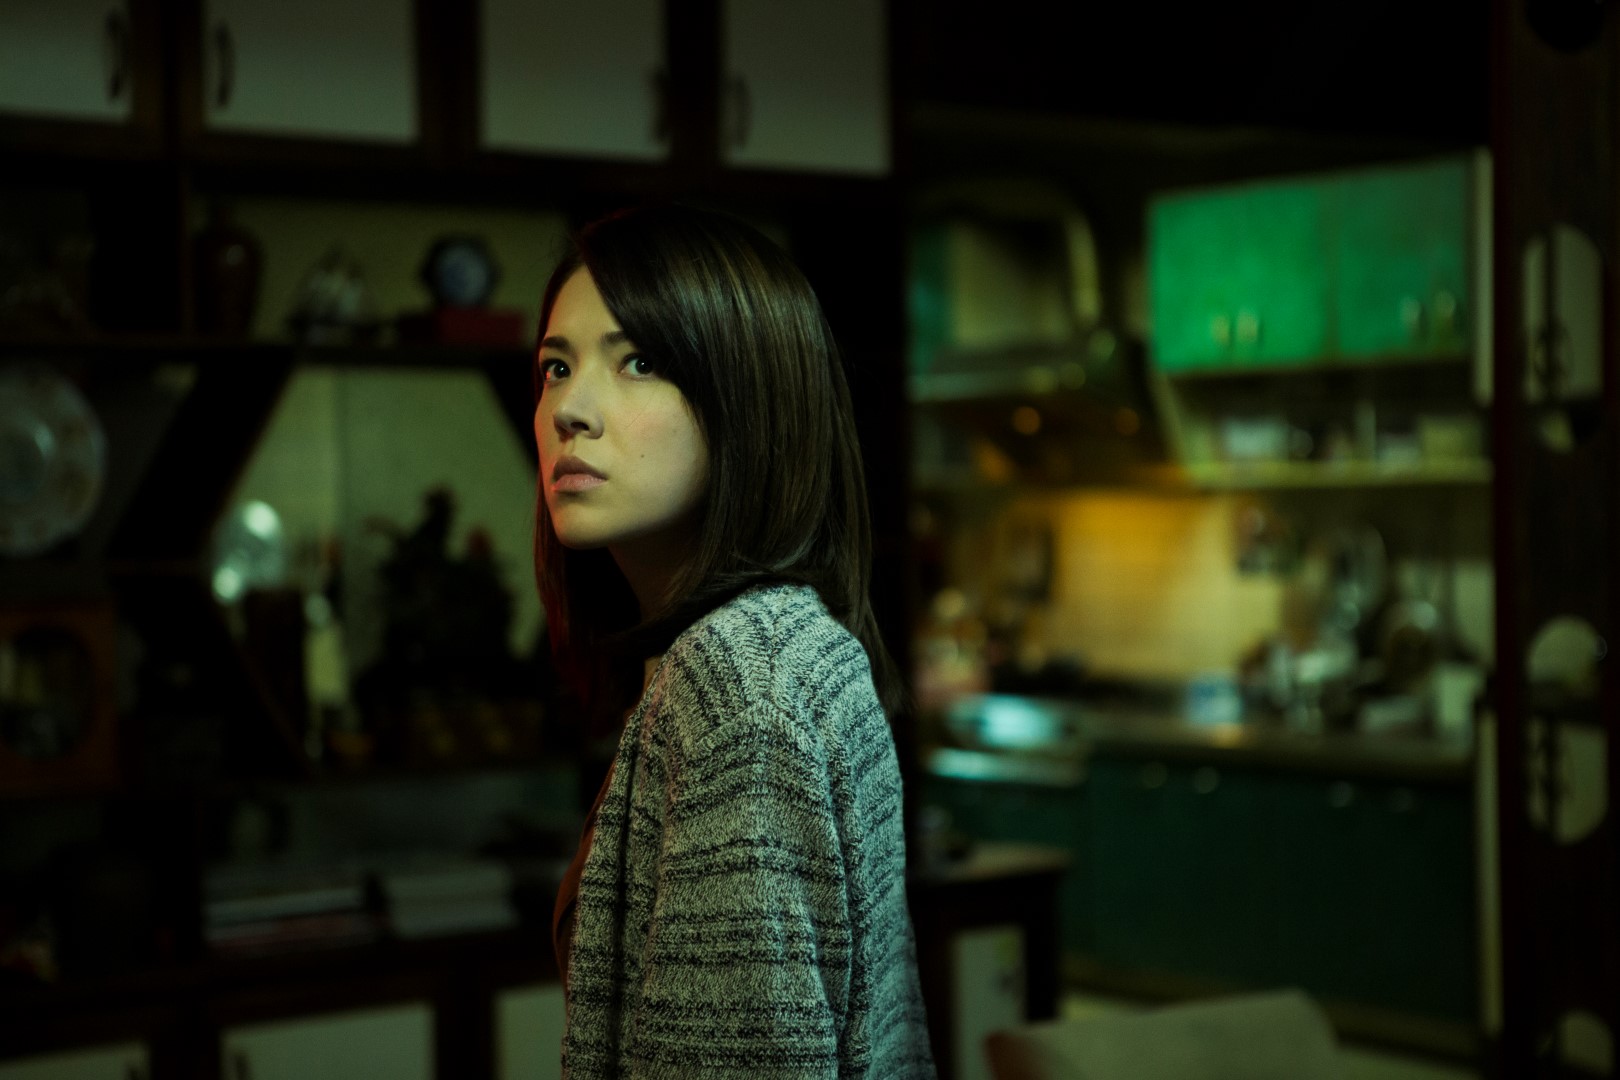 《保全員之死》新銳導演程偉豪大膽將台灣家喻戶曉的都市傳說《紅衣小女孩》搬上銀幕.jpg